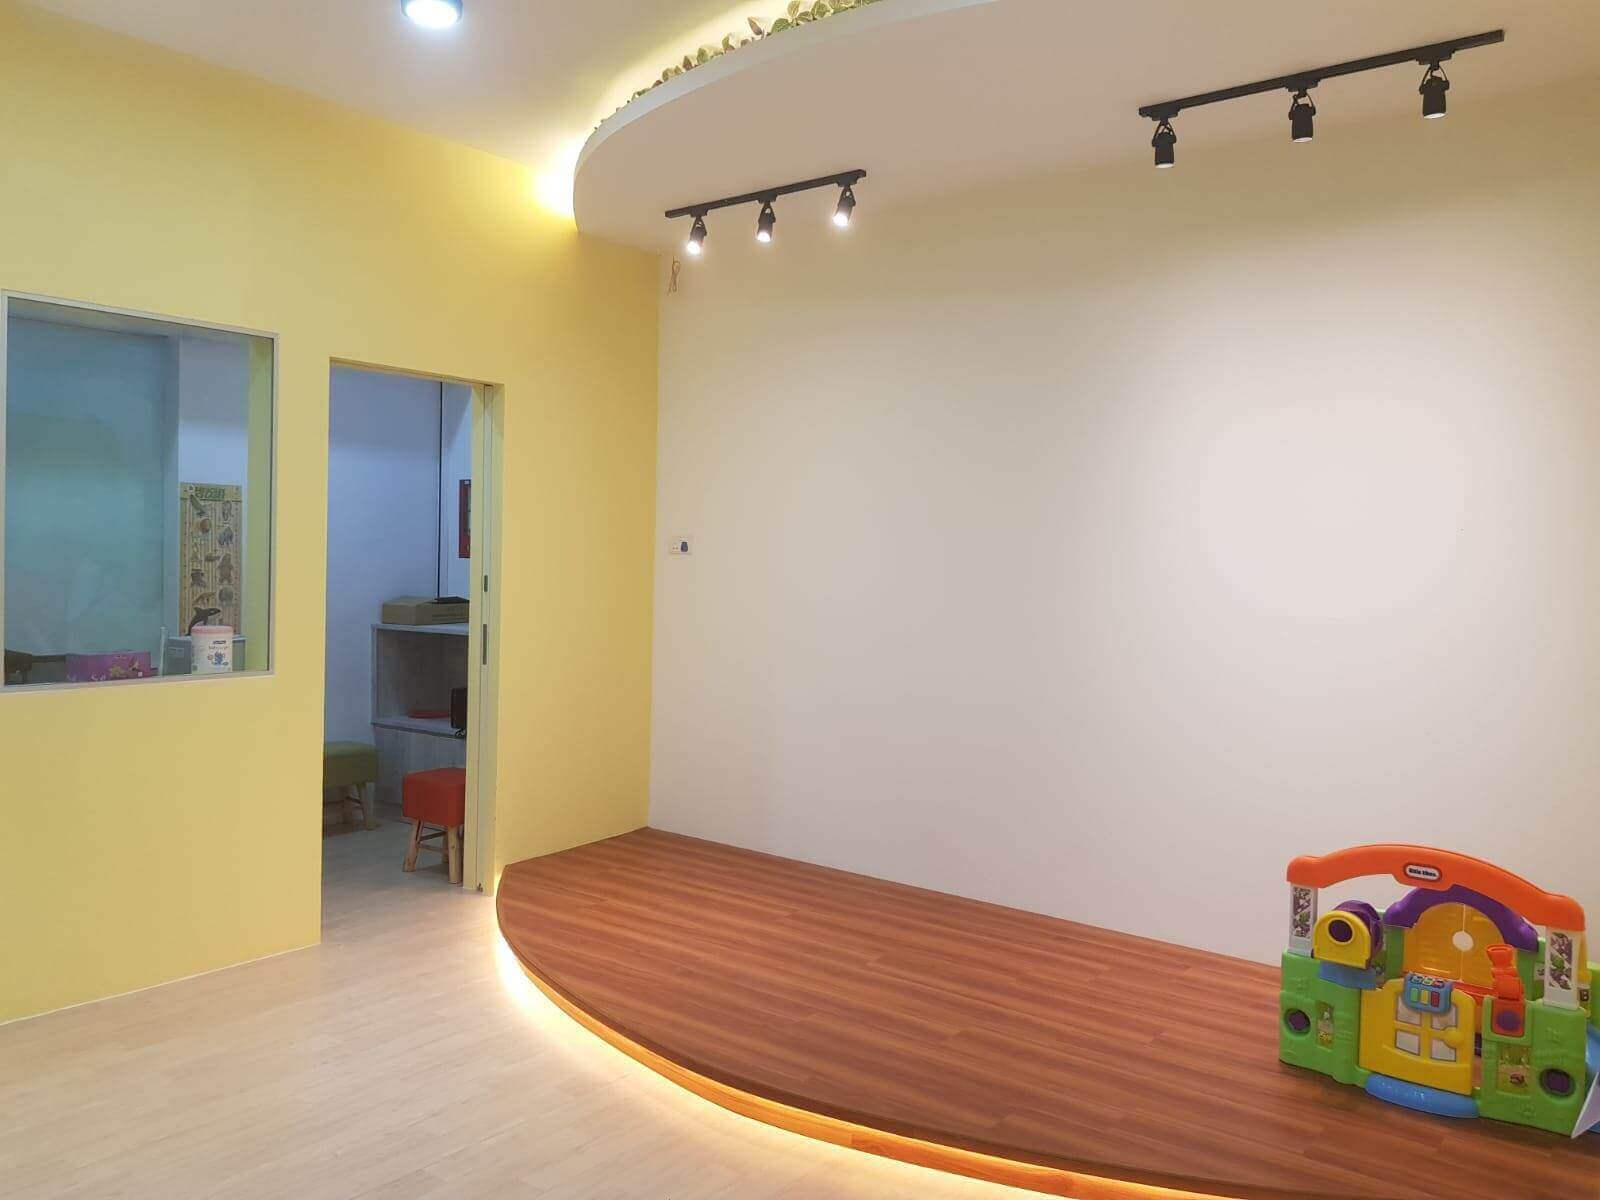 (已失效)Newly Set Up Childcare Centre Good Sheer Size For Bigger Capacity